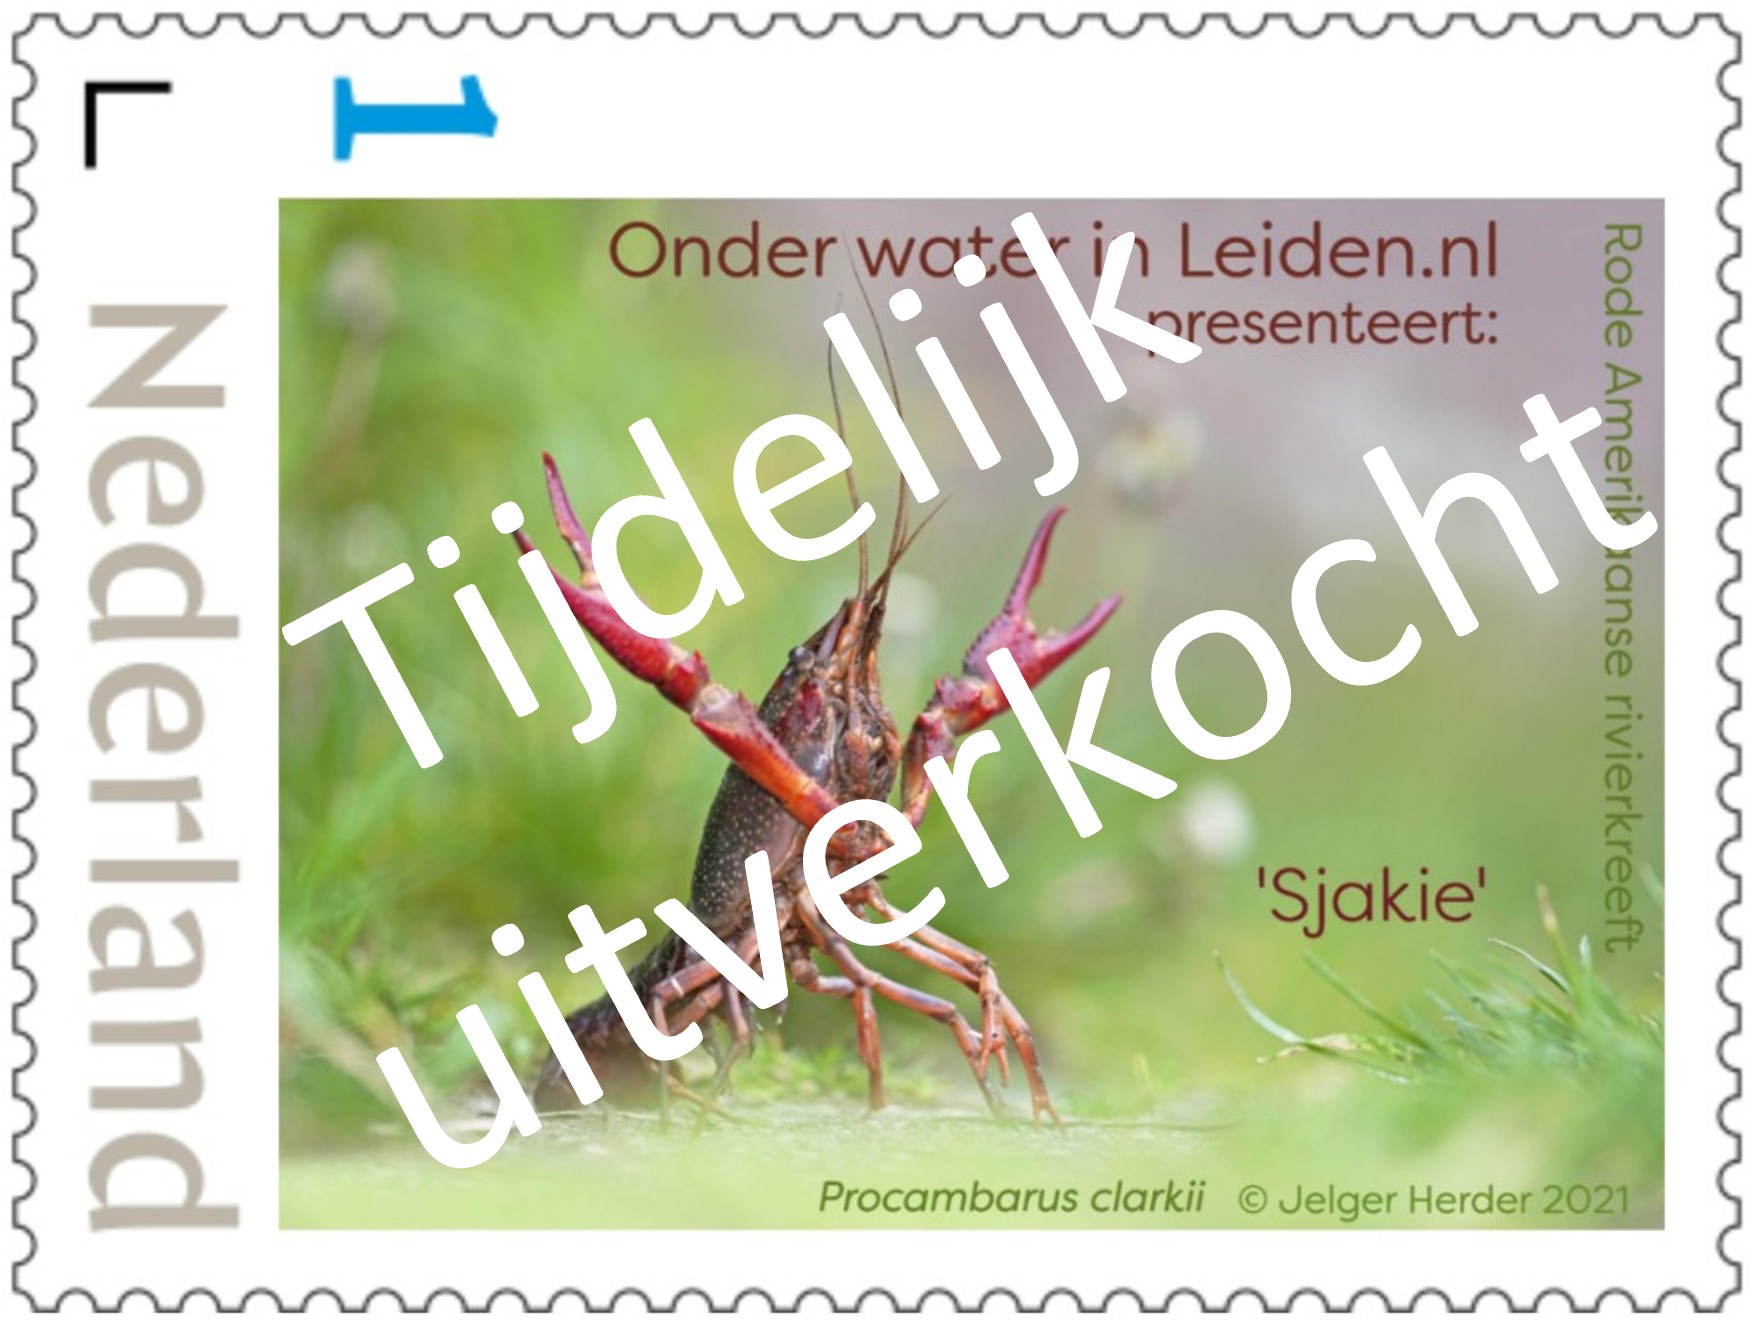 postzegel owl 2021 sjakie tijdelijk uitverkocht